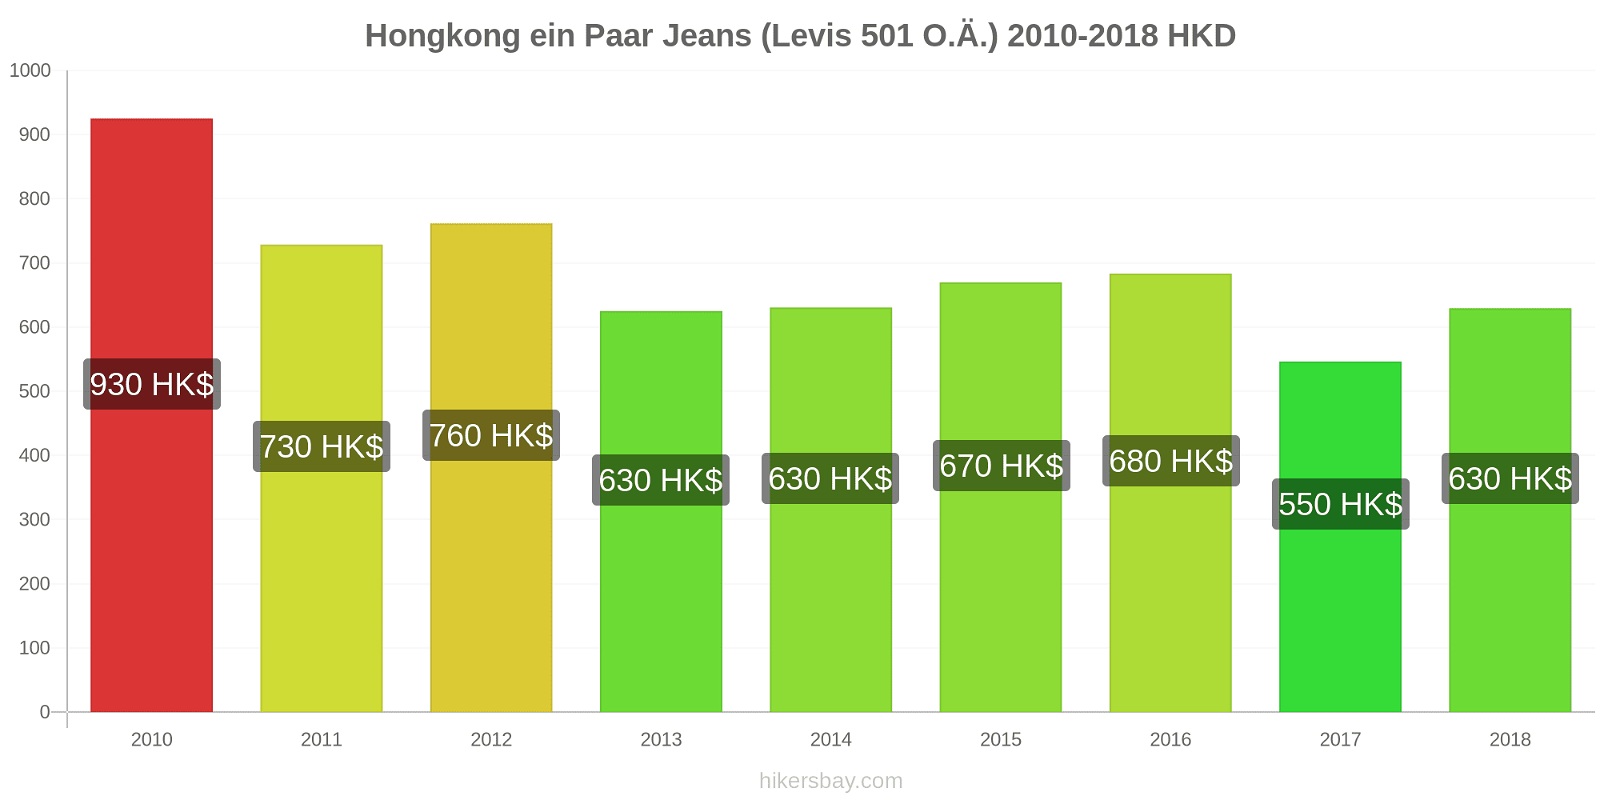 Hongkong Preisänderungen 1 Paar Jeans (Levis 501 oder ähnlich) hikersbay.com